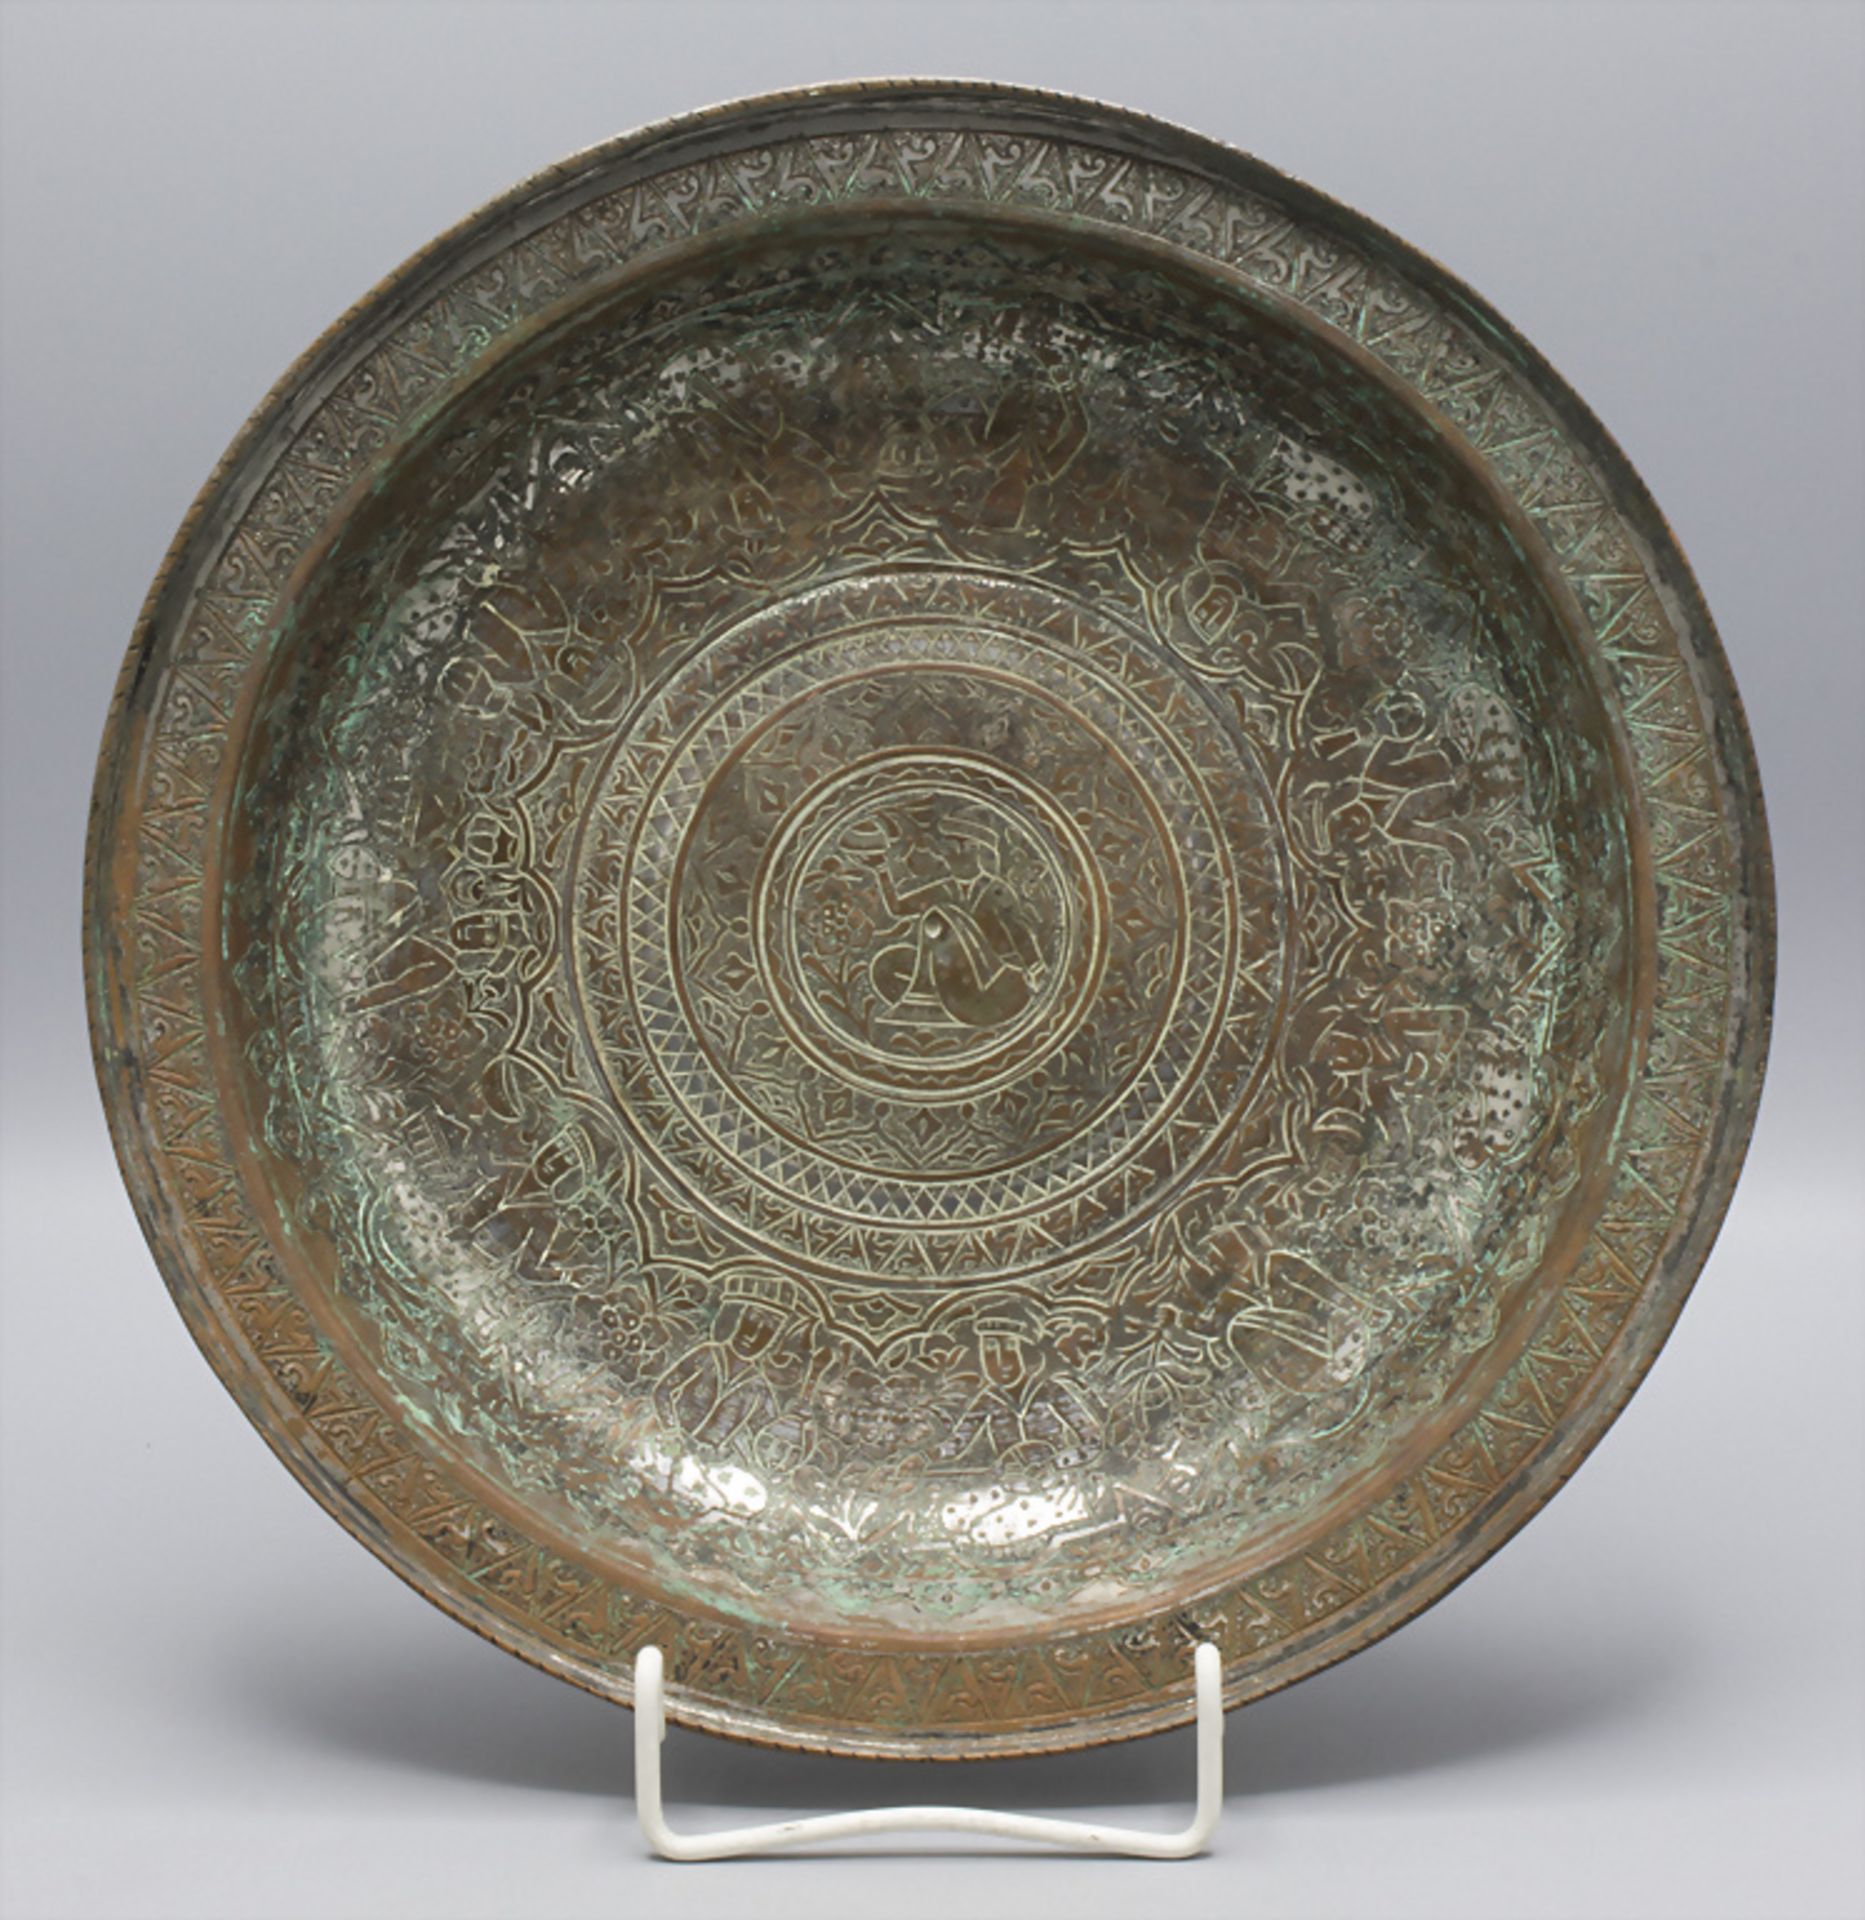 Zierschale / A decorative copper bowl, Pakistan/Iran, 16./17. Jh.